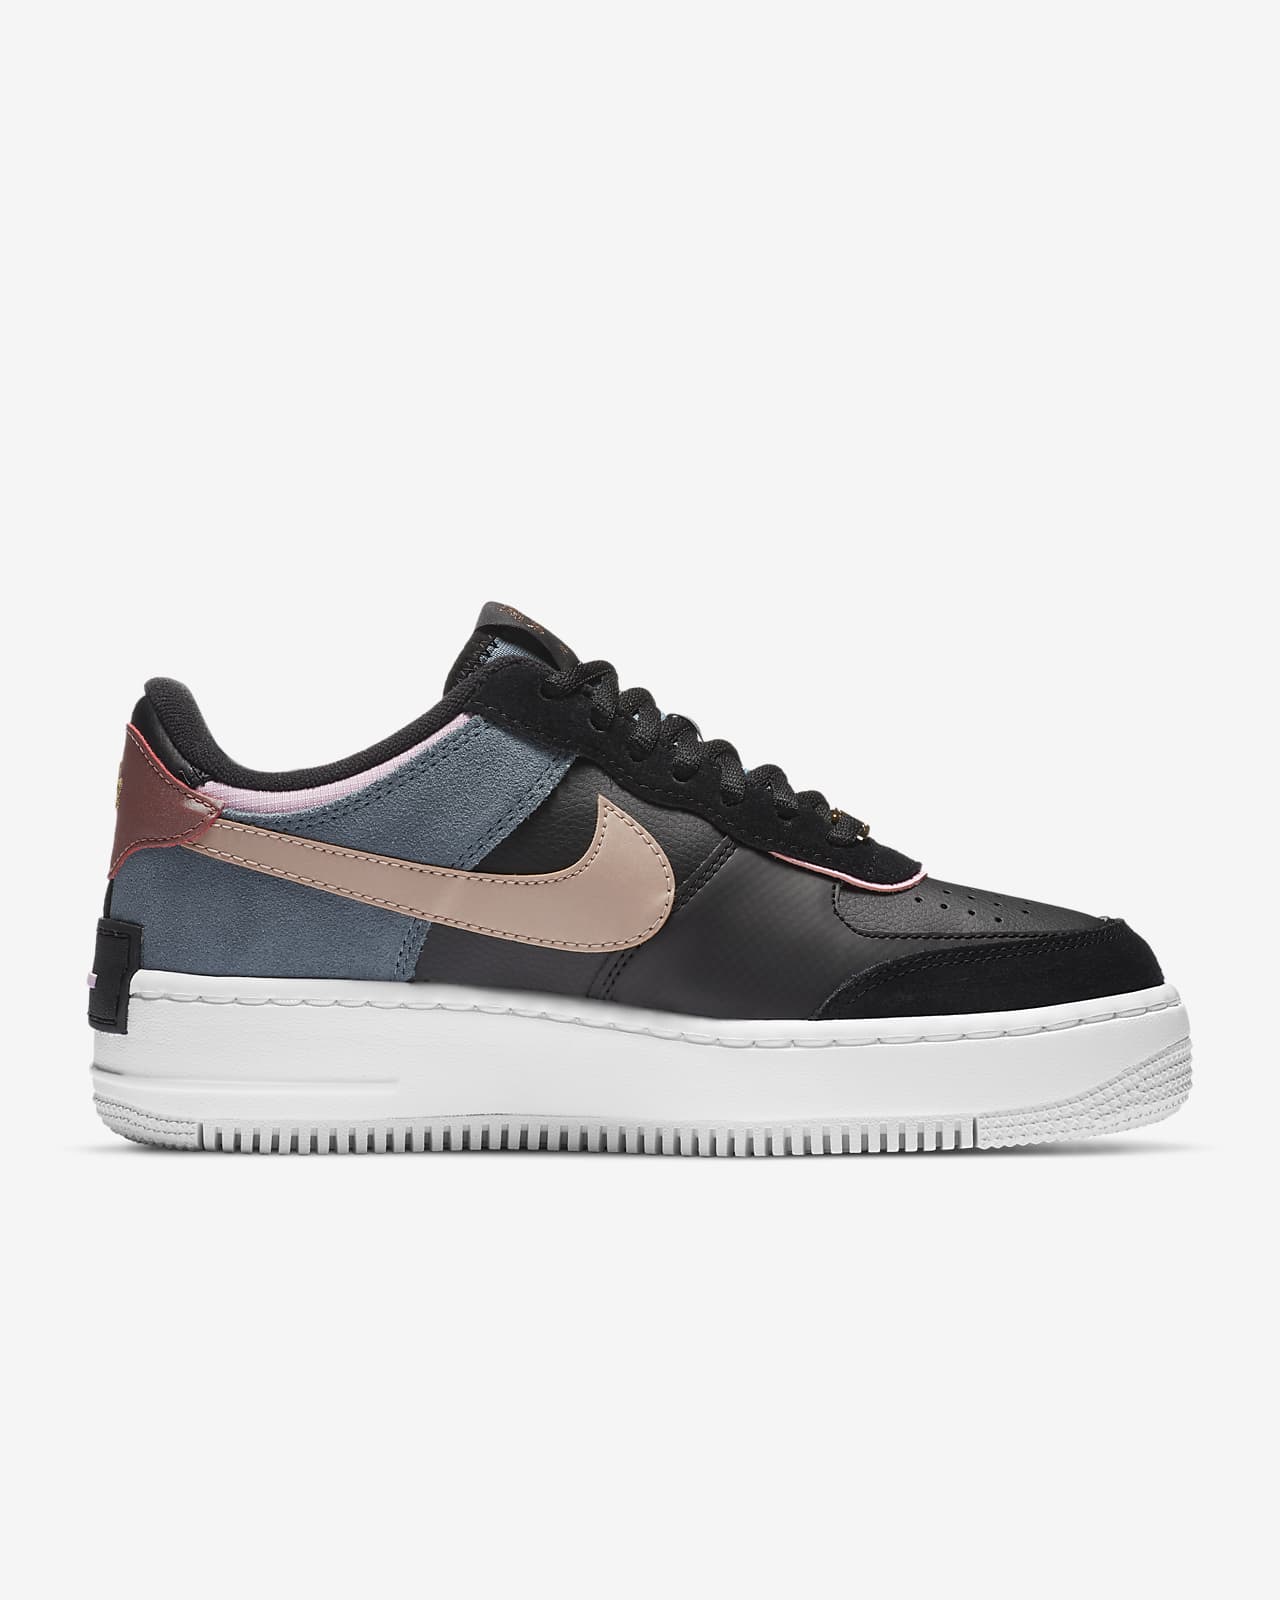 Nike Air Force 1 Shadow Women's Shoe 